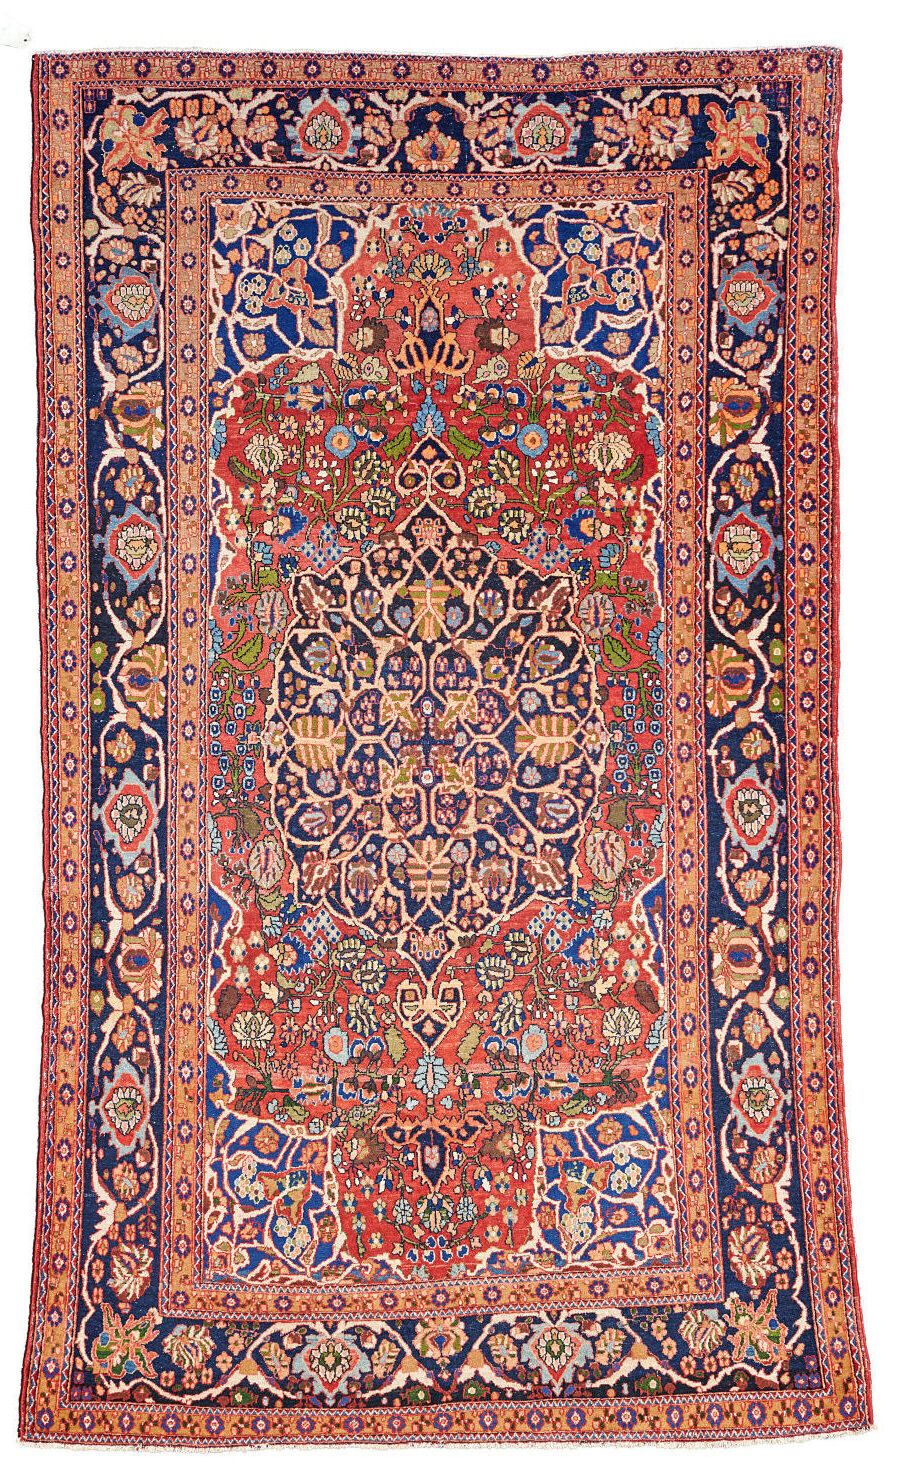 Null Isfahan Teppich
Kette und Schuss aus Baumwolle, Flor aus Wolle (leichte Abn&hellip;